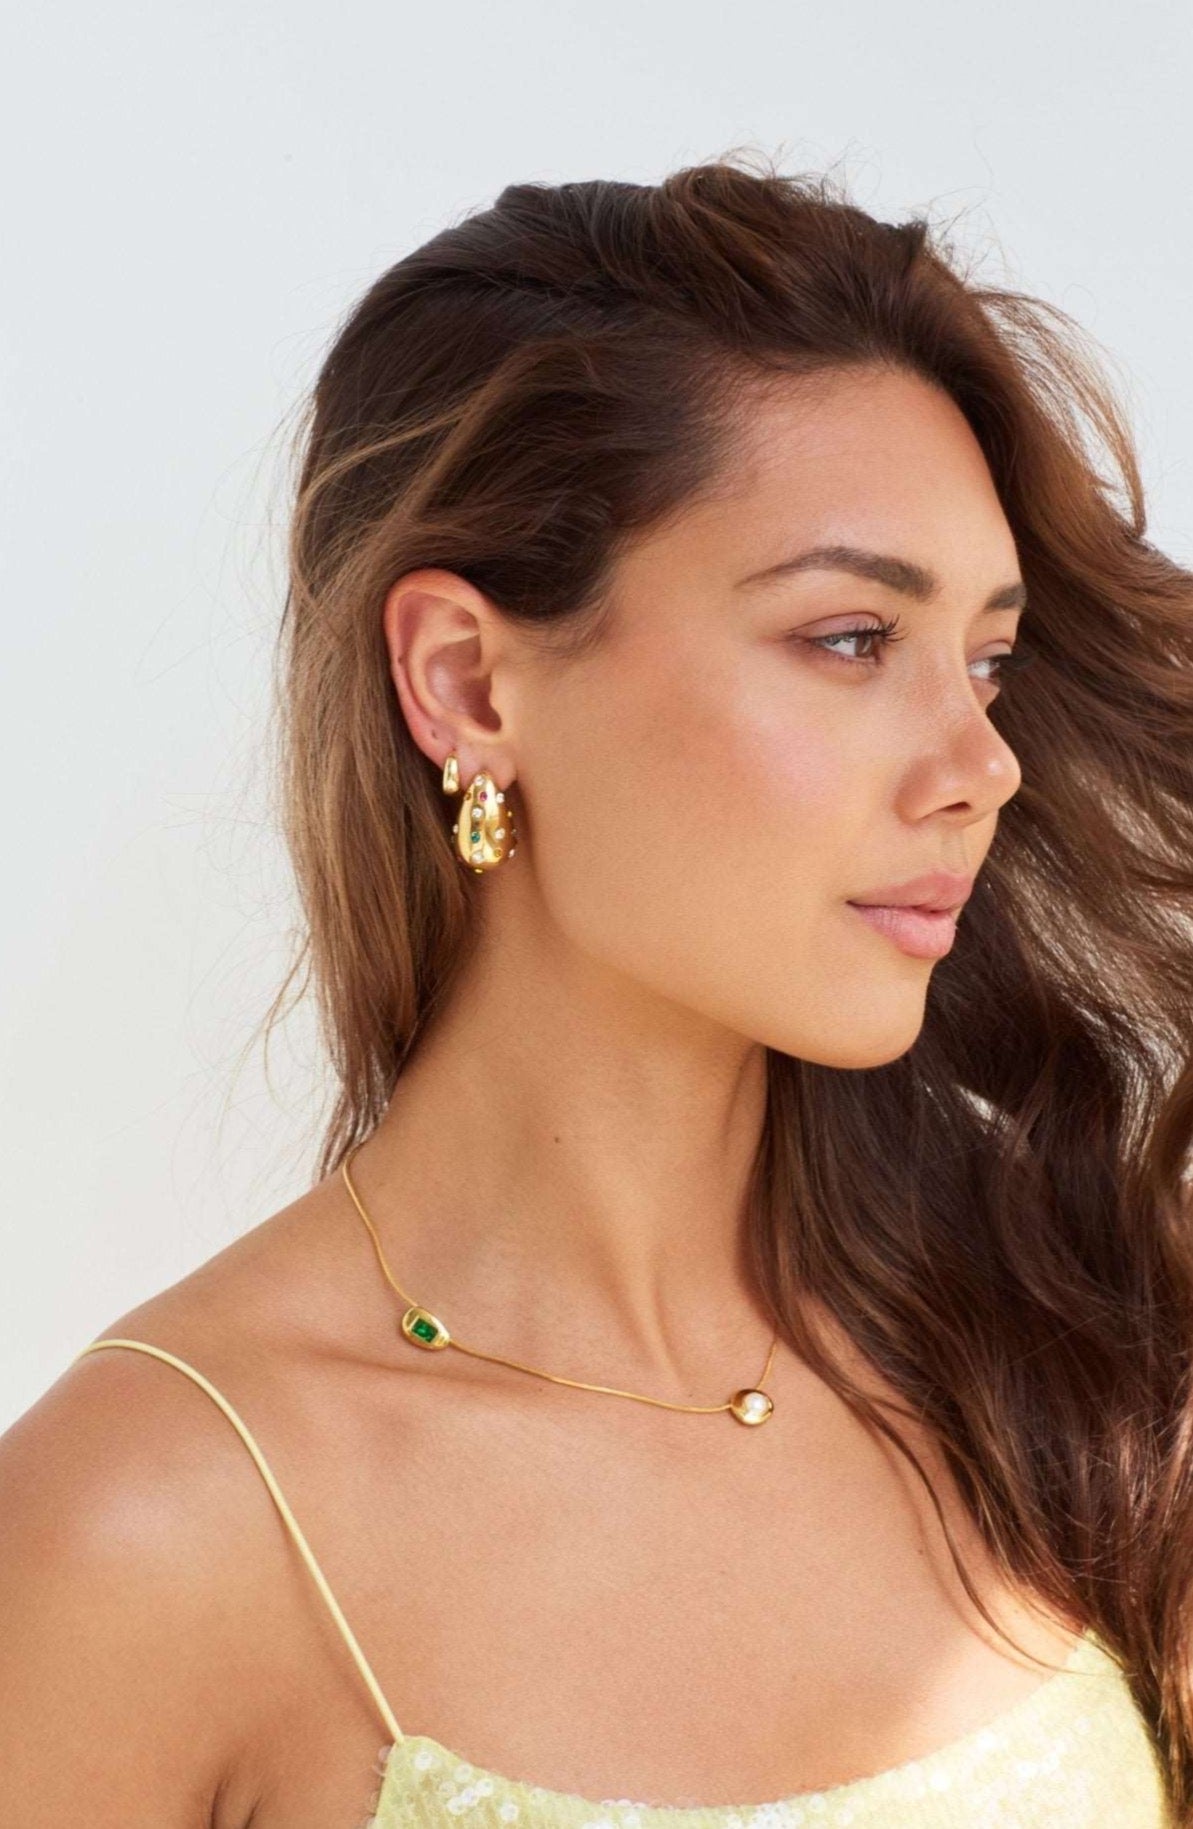 Model wearing Bottega shaped earrings